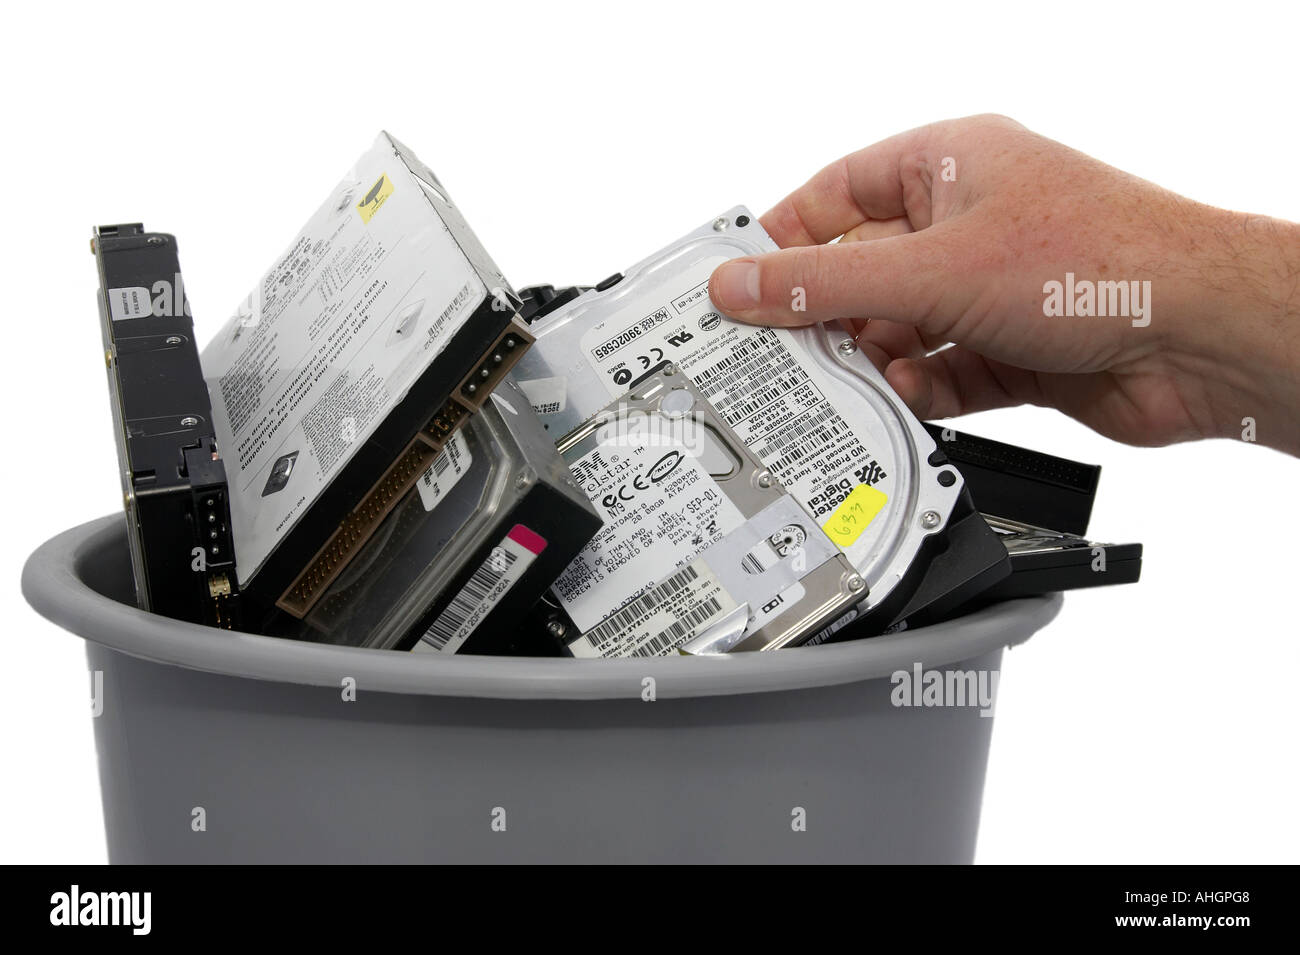 La suppression de la main ou de placer les disque dur dans le bac gris contenant divers les disques durs des ordinateurs contre fond blanc Banque D'Images